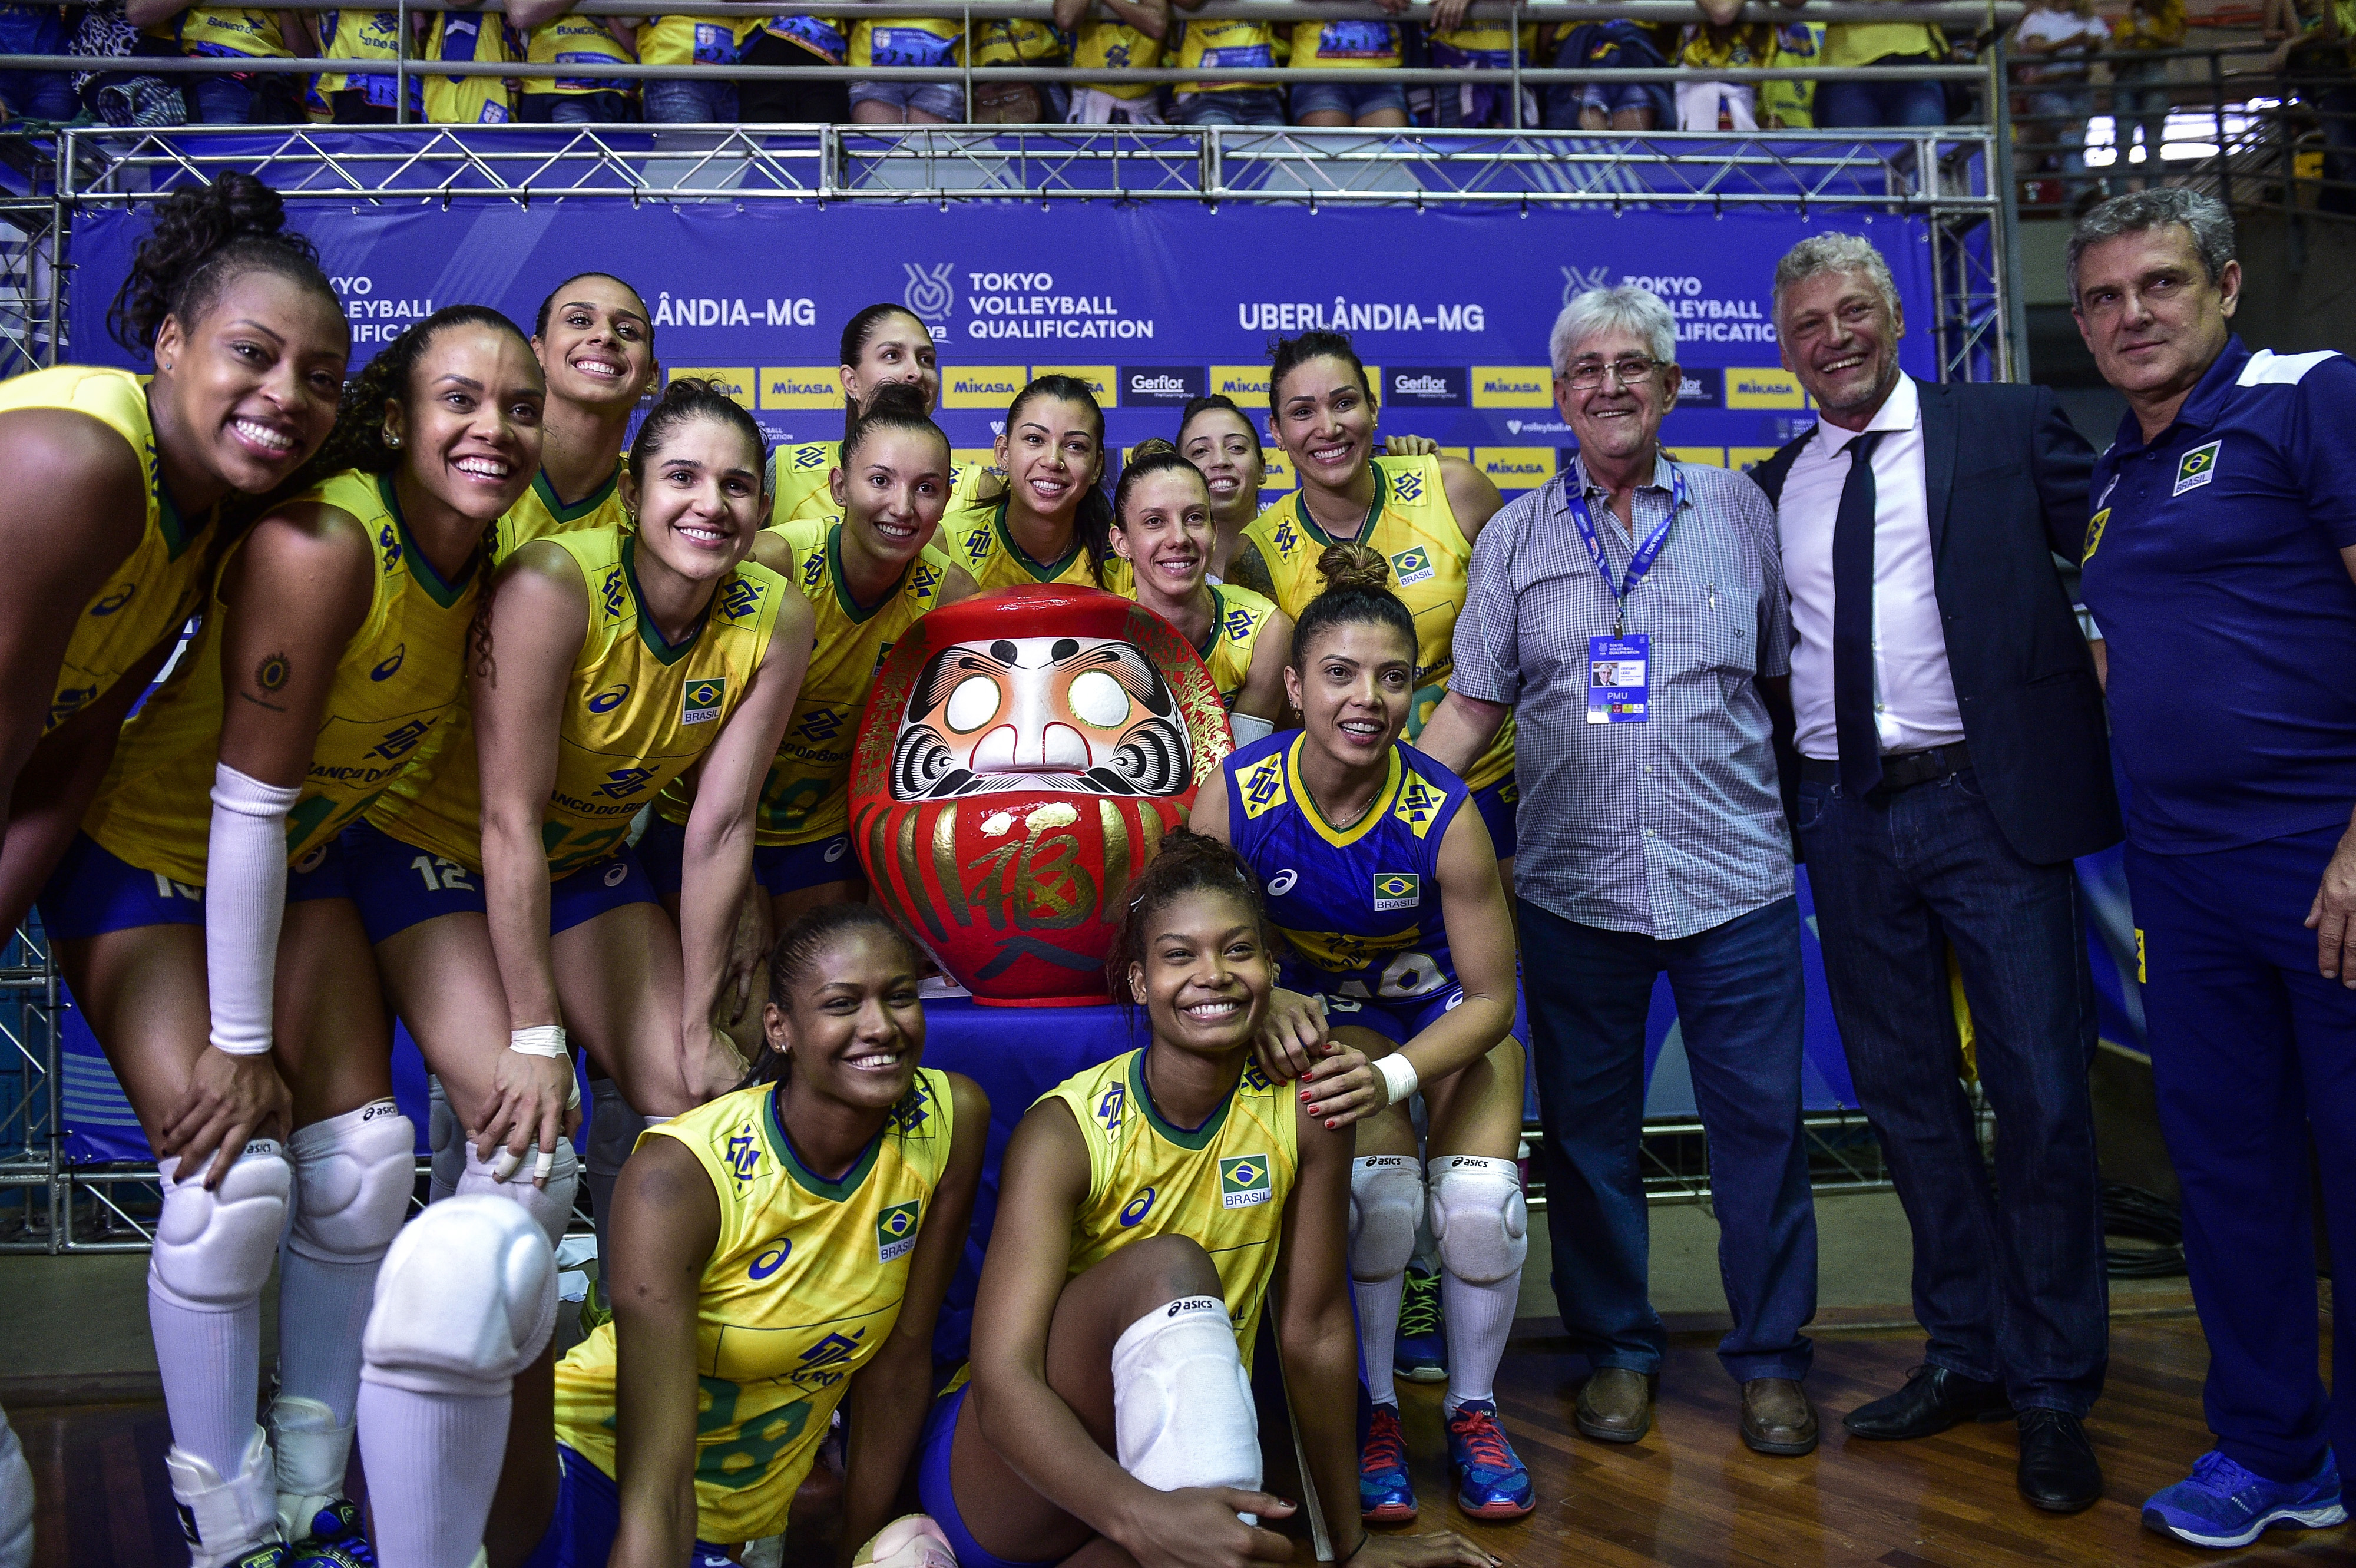 Jogos Pan-Americanos: Brasil bate Argentina e segue 100% no vôlei feminino  - Toda Bahia